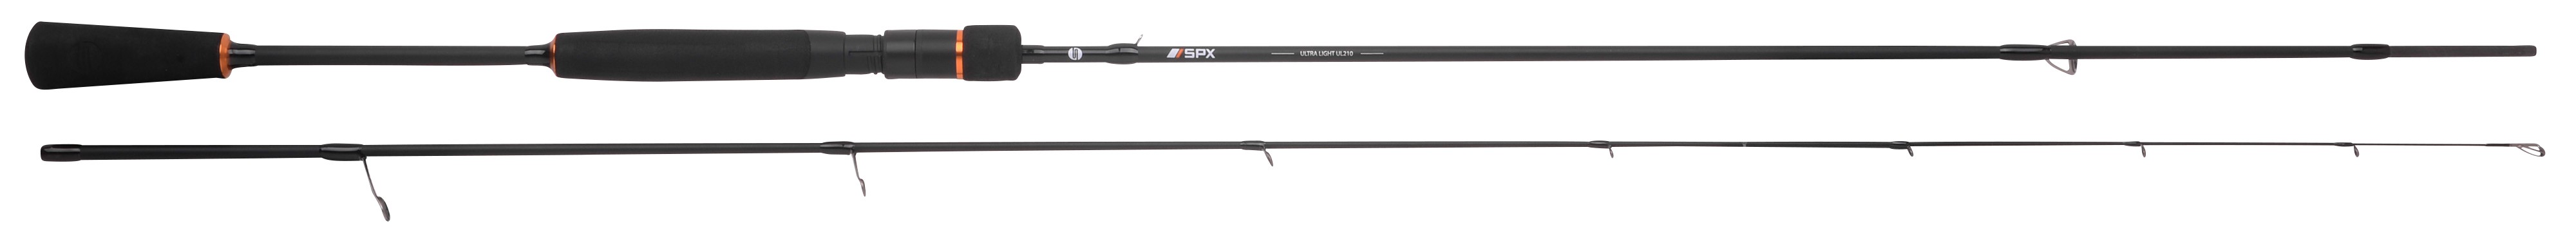 Spro SPX Ultra Light Rods